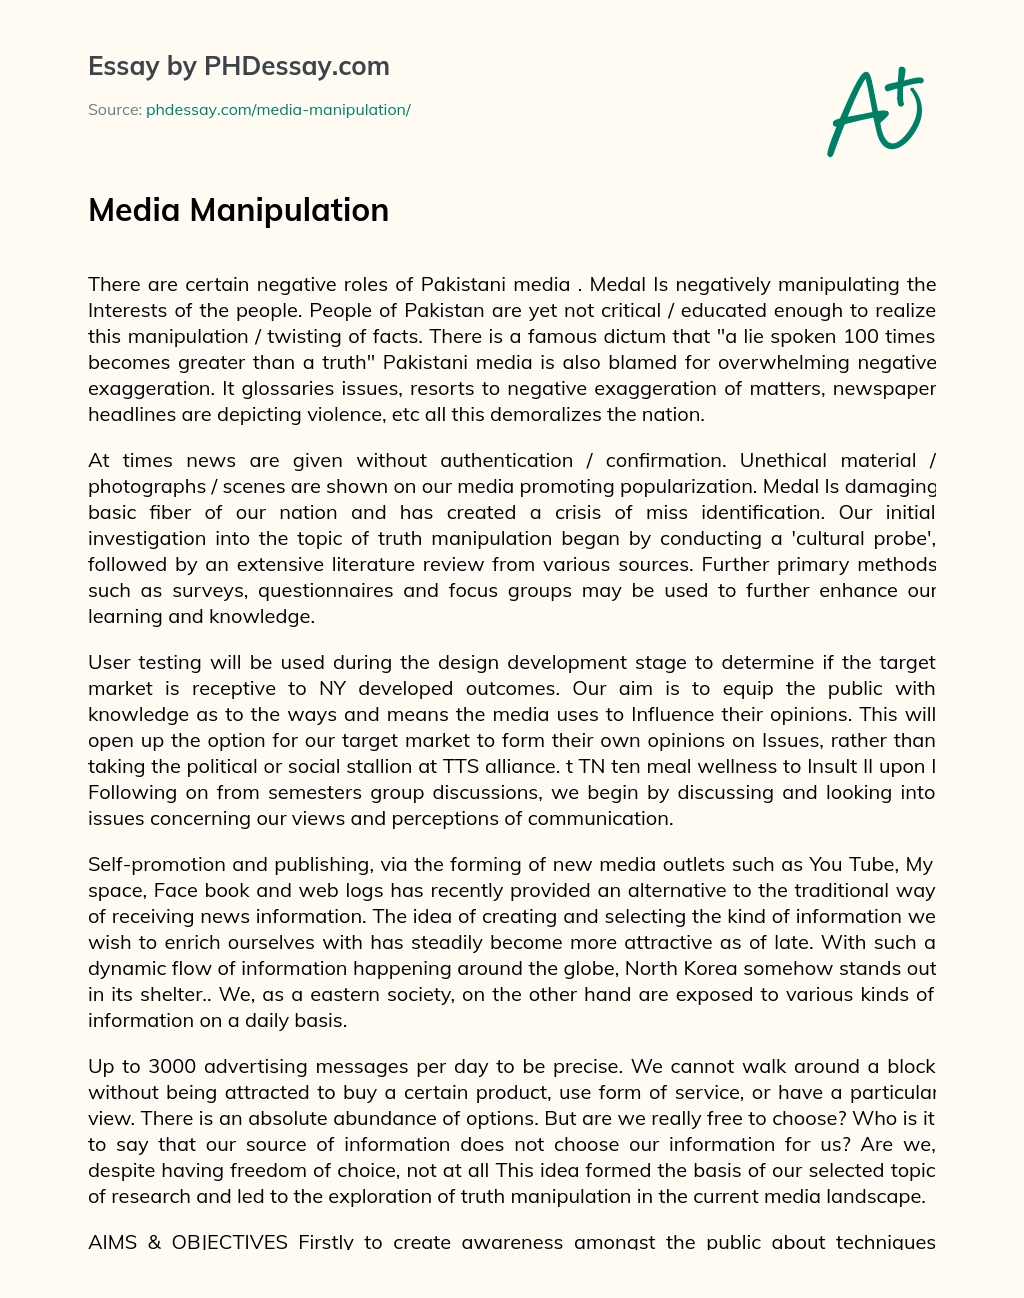 Media Manipulation essay